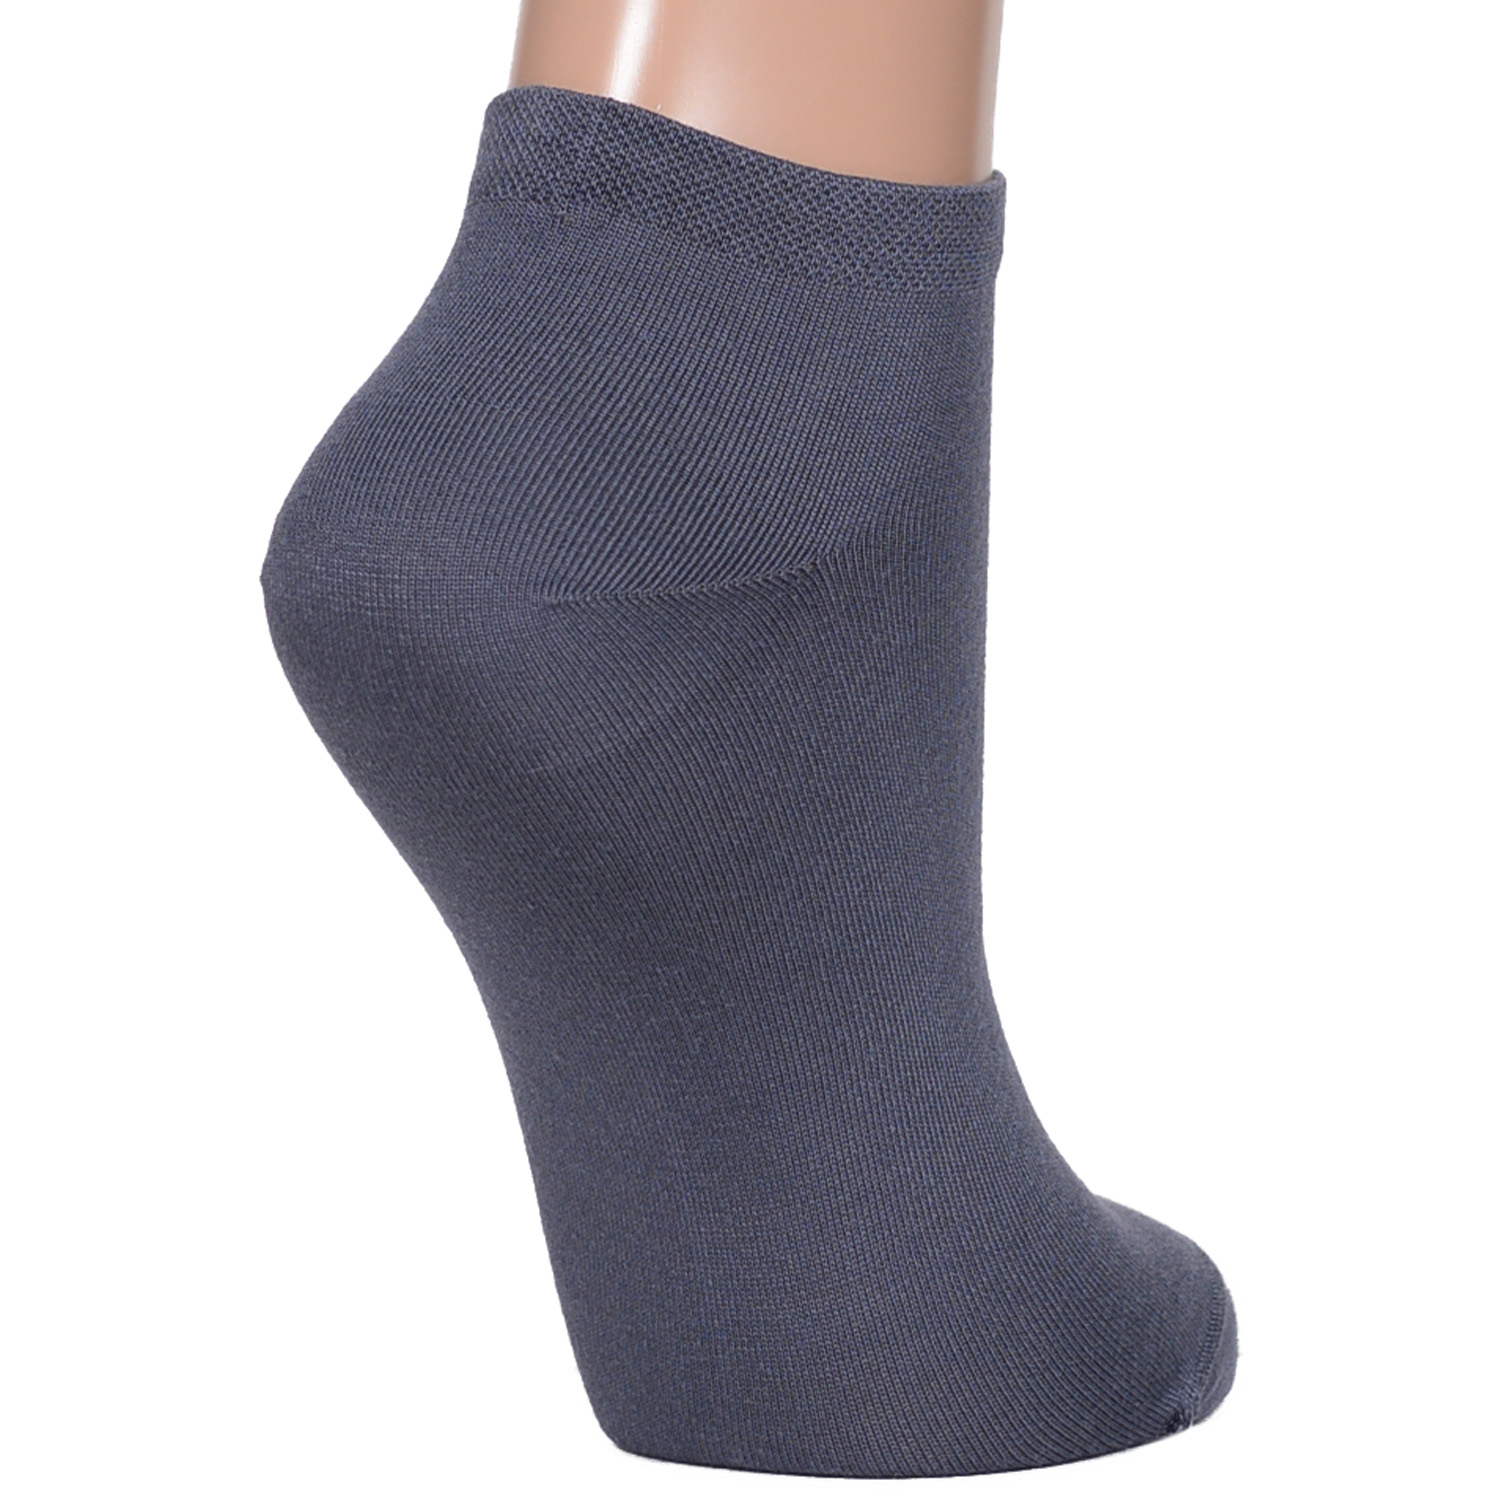 Комплект носков женских Rusocks 3-Ж-1522 серых; синих; черных 23